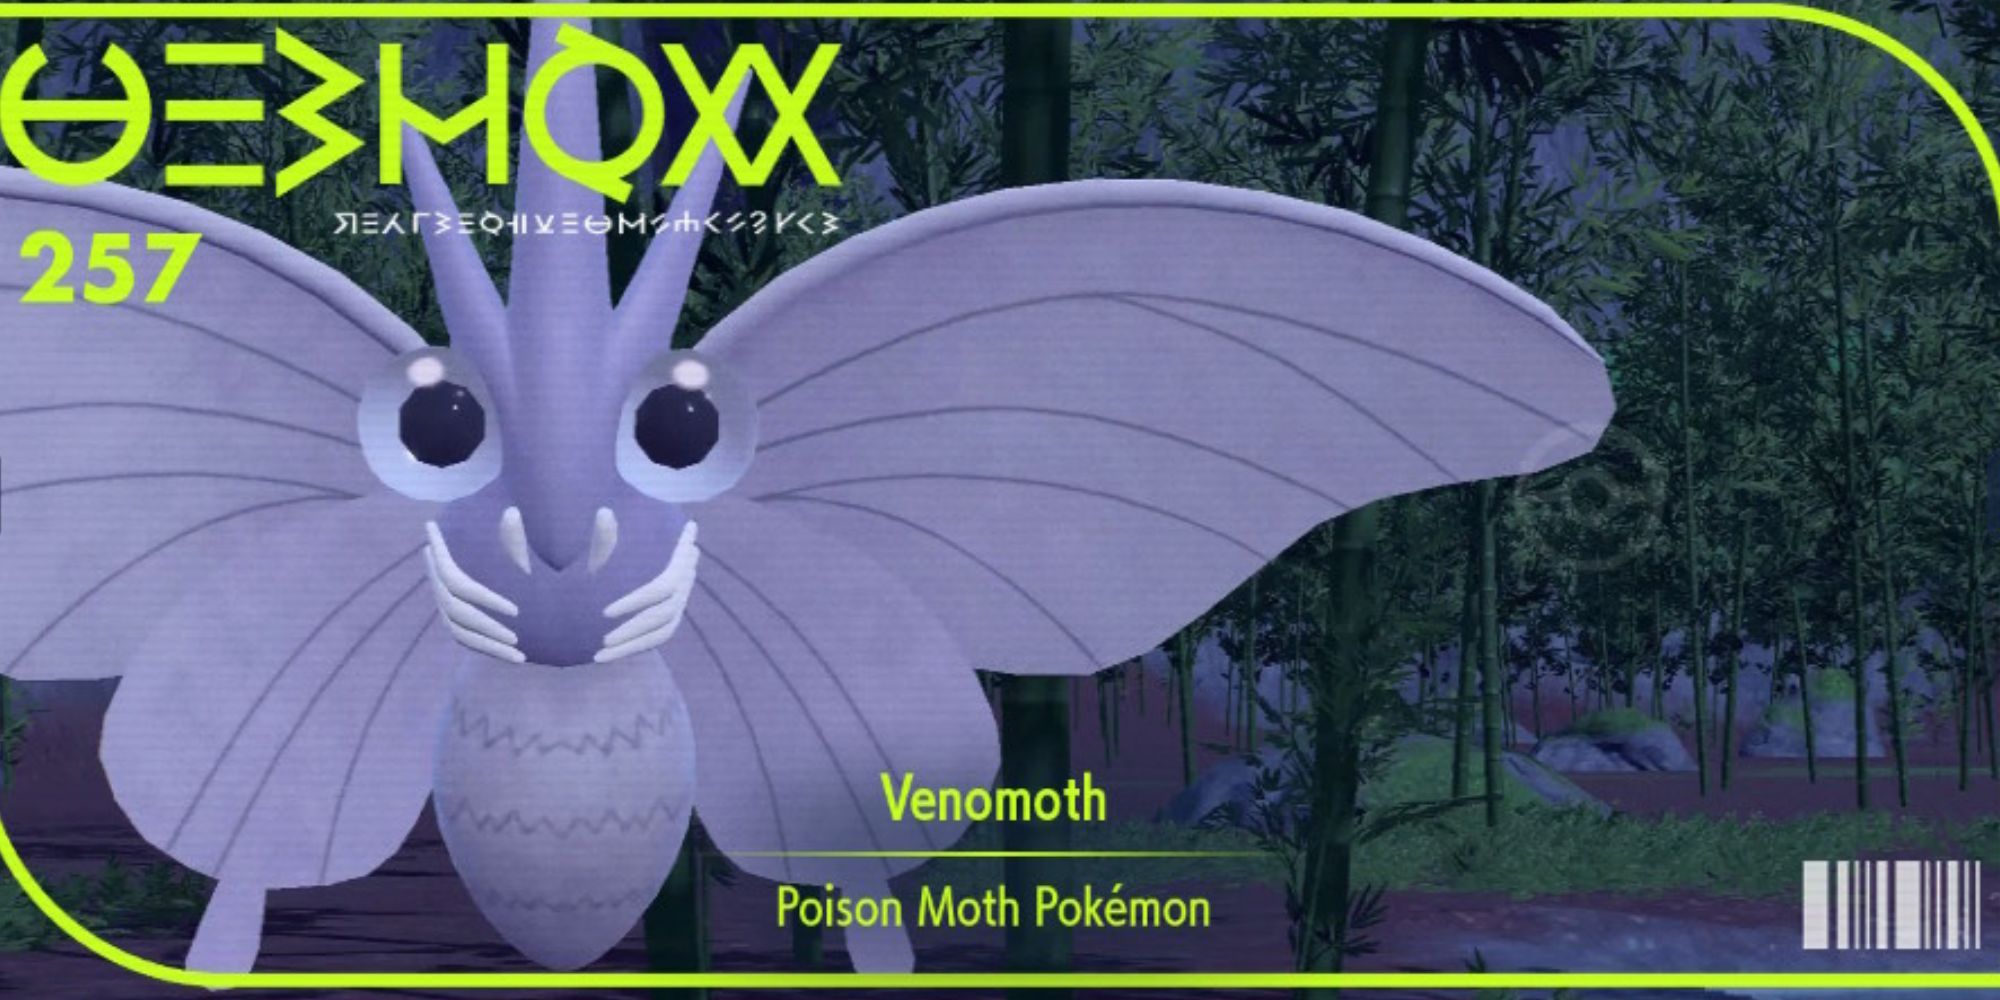 The pokedex cover image for Venomoth in Pokemon Scarlet & Violet